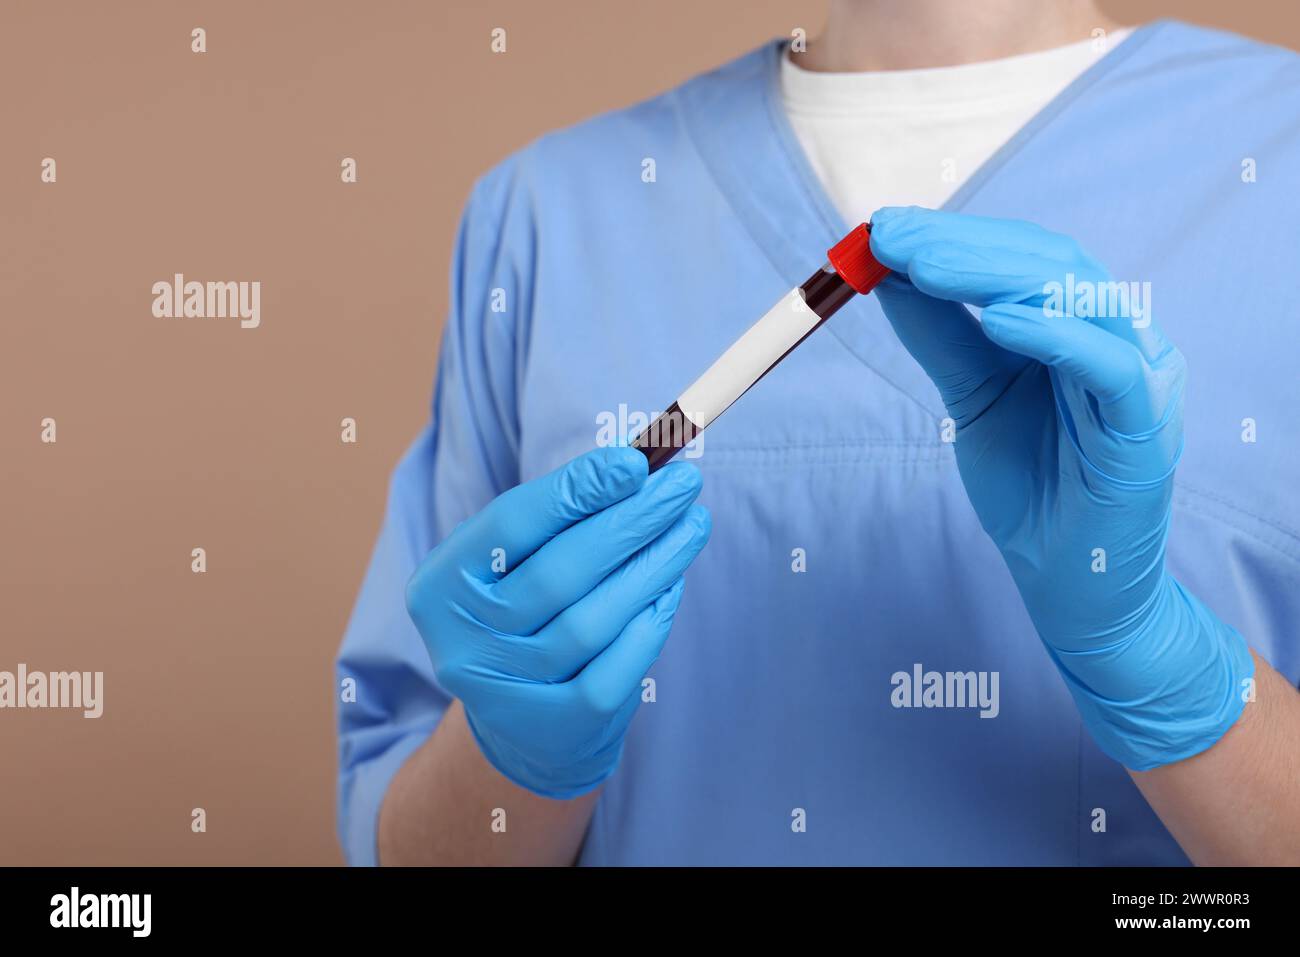 Analisi di laboratorio. Medico con campione di sangue nella provetta su sfondo marrone chiaro, primo piano Foto Stock